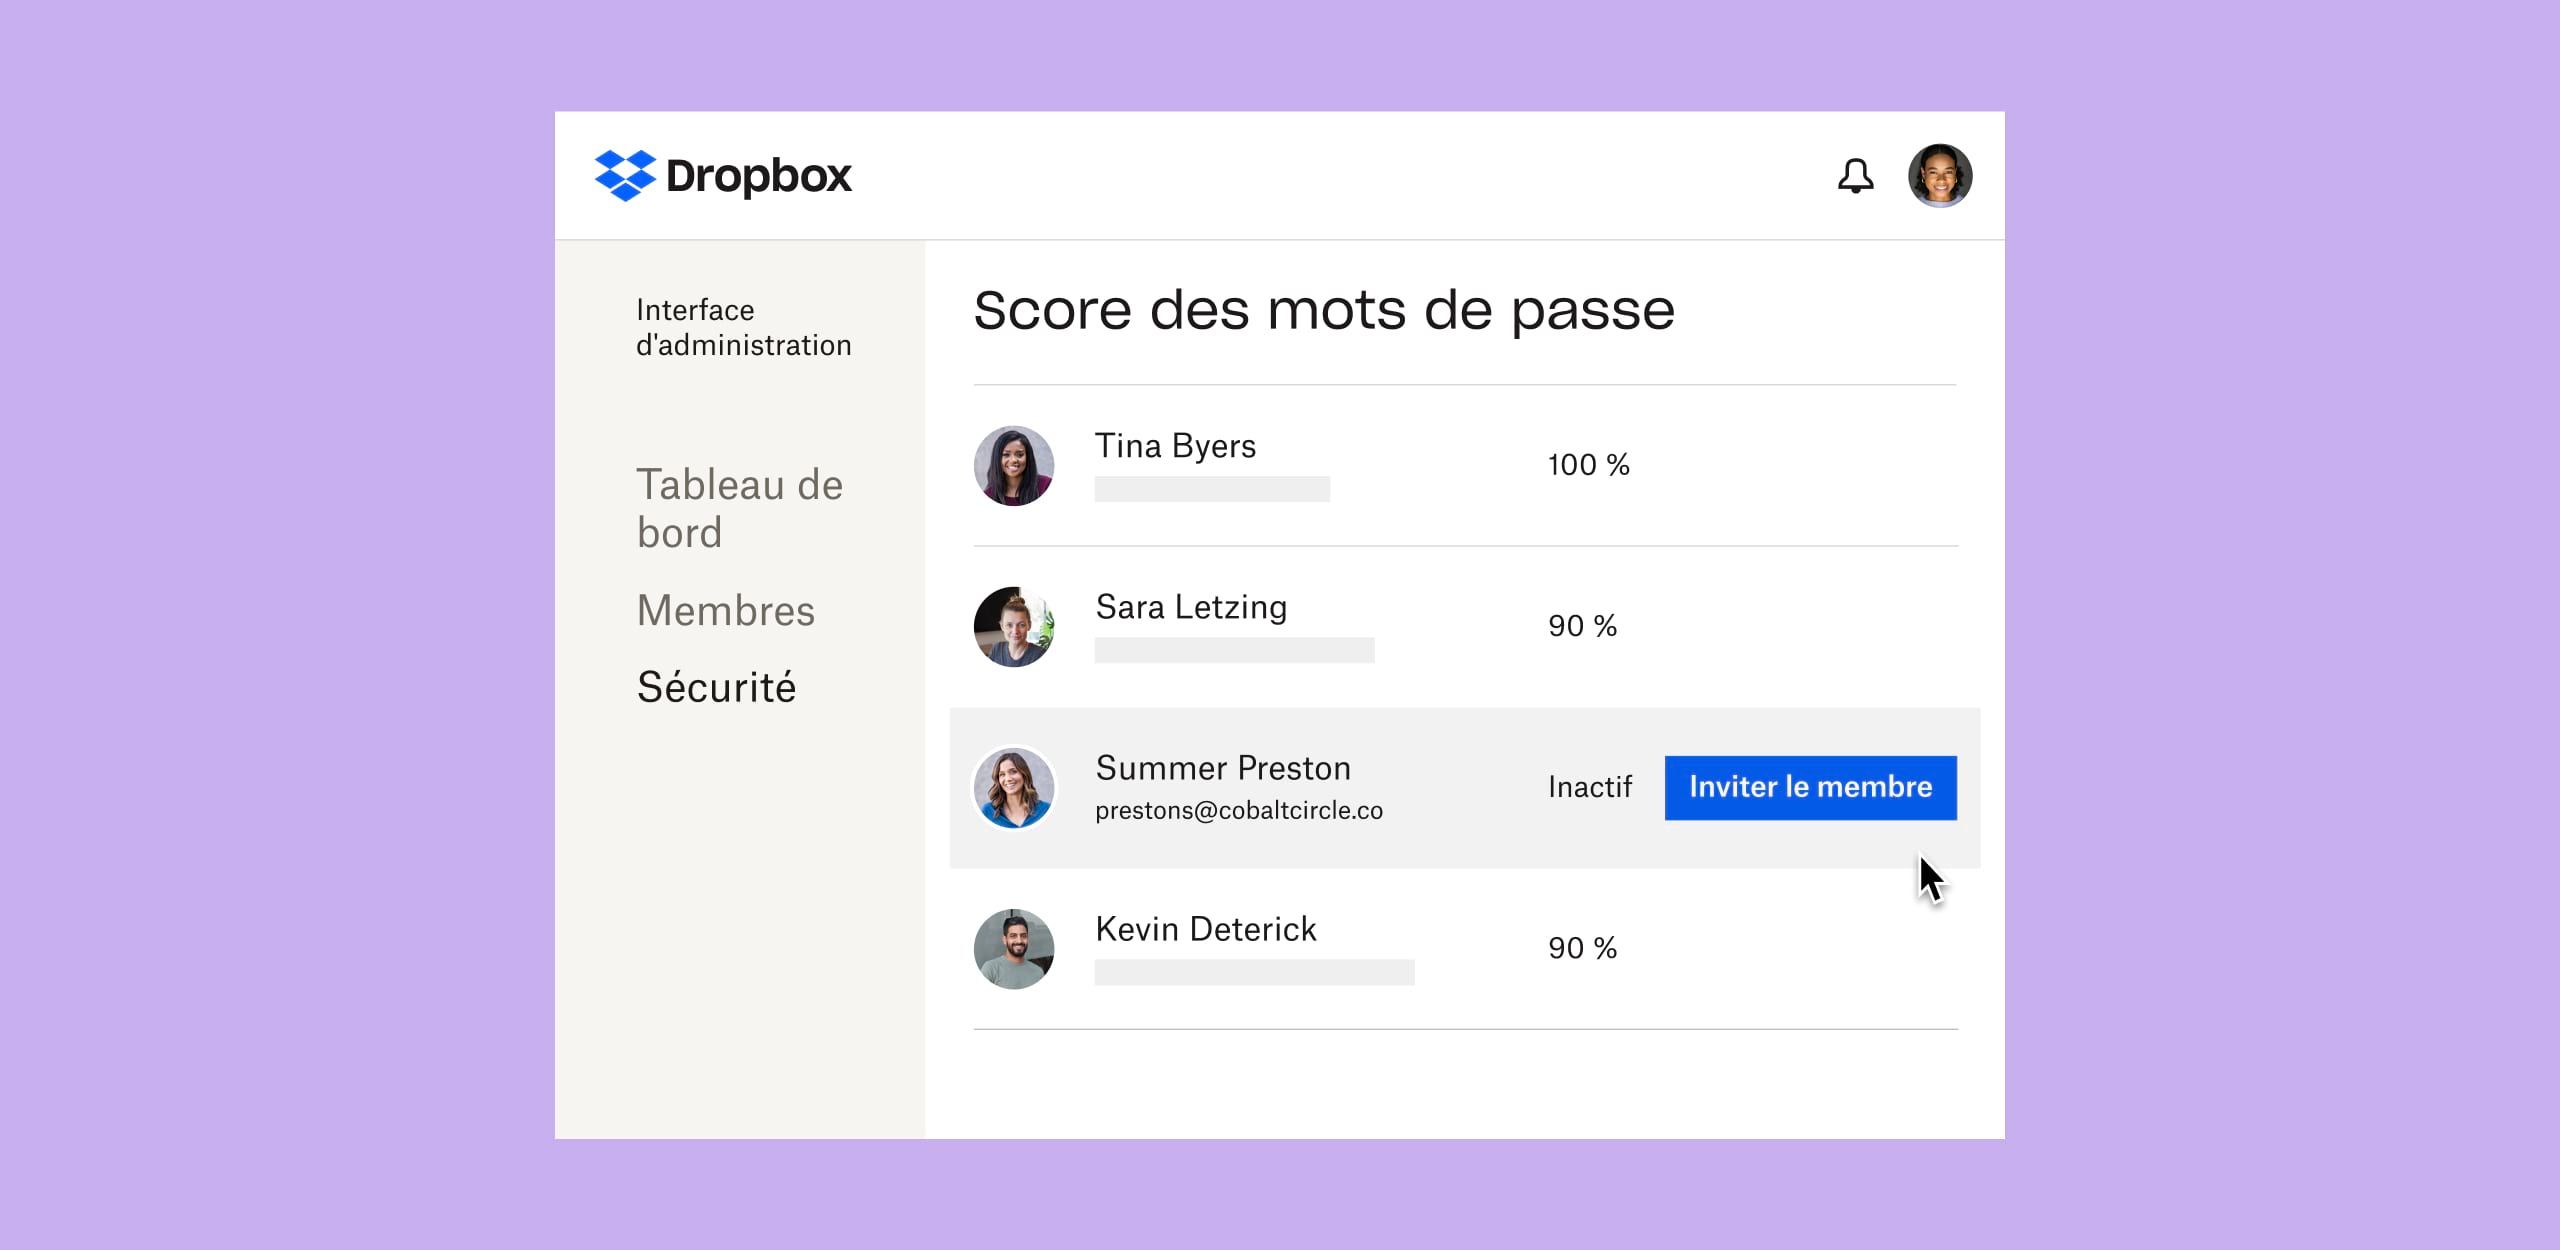 Interface Dropbox affichant les scores des mots de passe des utilisateurs individuels et un bouton bleu intitulé “Inviter le membre” à côté d'un profil d'utilisateur inactif